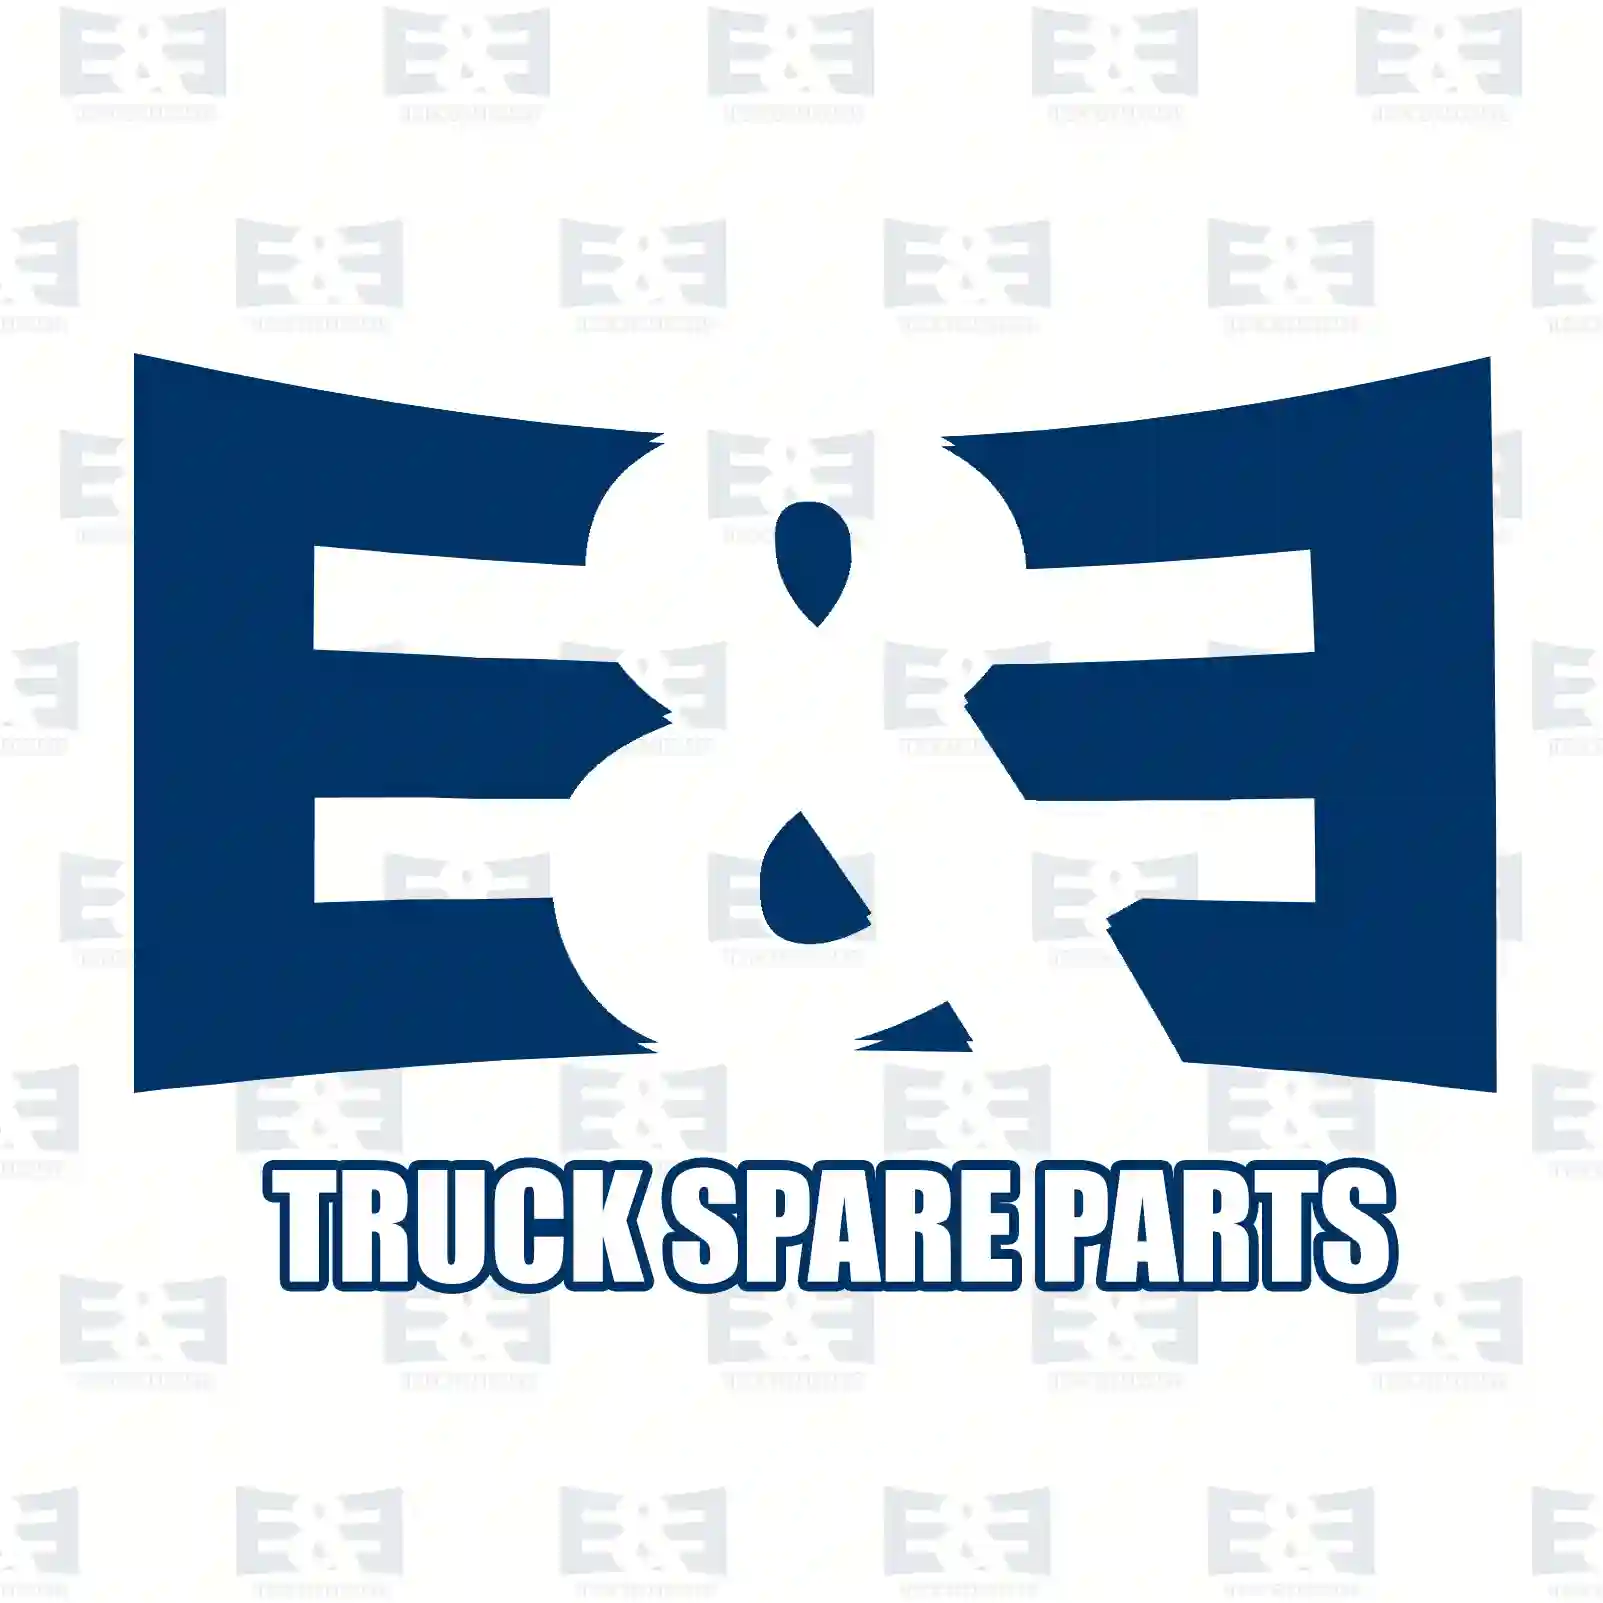 Brake drum, 2E2293734, 21018963, , , , , , ||  2E2293734 E&E Truck Spare Parts | Truck Spare Parts, Auotomotive Spare Parts Brake drum, 2E2293734, 21018963, , , , , , ||  2E2293734 E&E Truck Spare Parts | Truck Spare Parts, Auotomotive Spare Parts